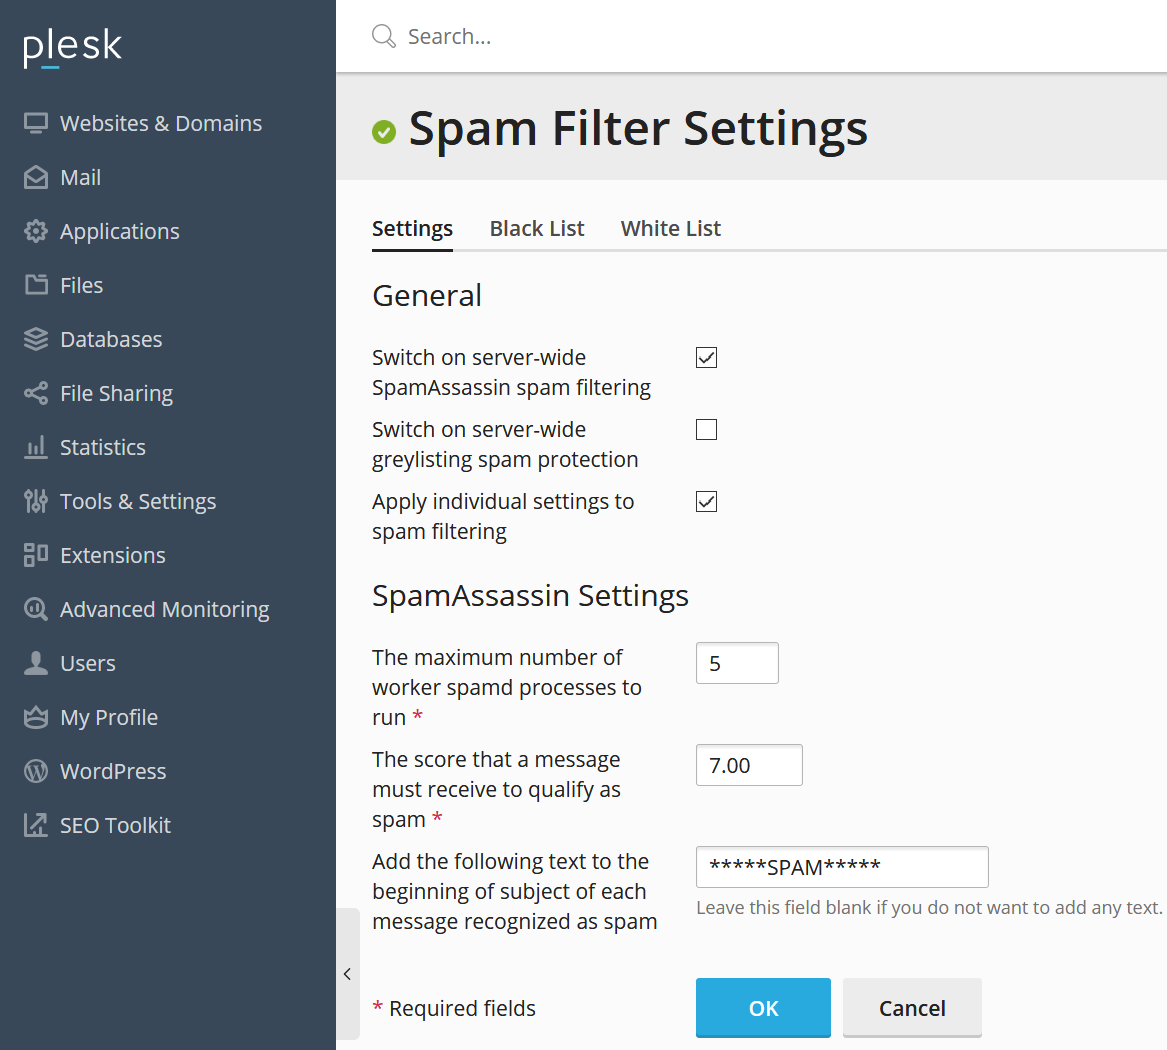 plesk spam filter settings